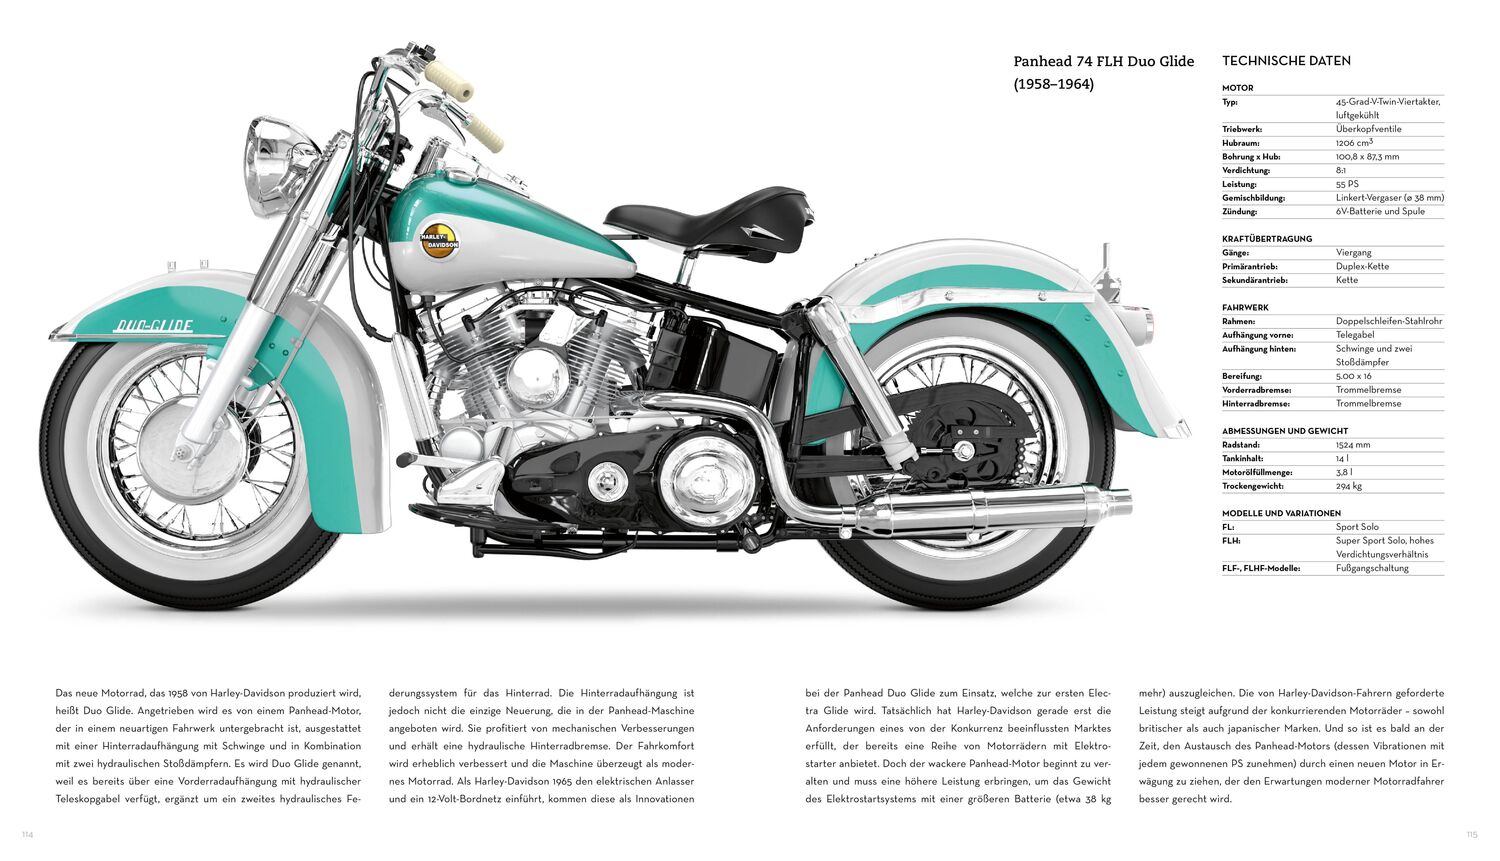 Bild: 9788863126372 | Harley-Davidson. Begegnung mit der Legende | Pascal Szymezak | Buch